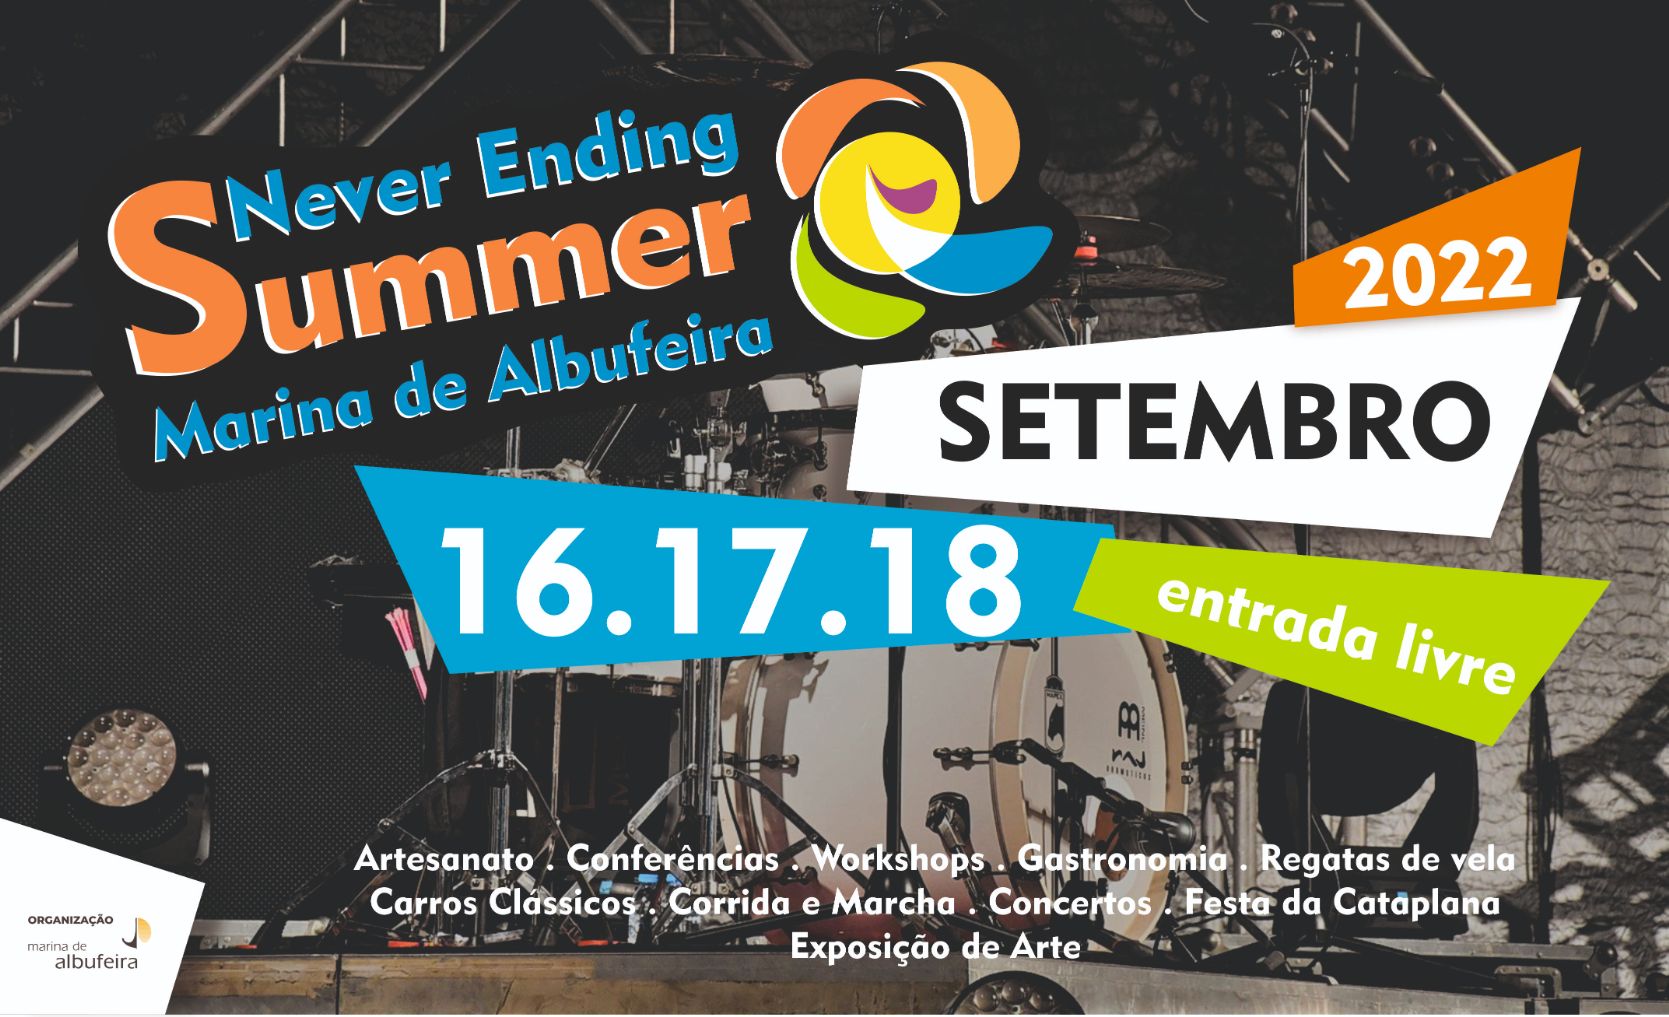 Never Ending Summer Marina de Albufeira, o último grande festival do verão no Algarve, está de volta nos dias 16, 17 e 18 de Setembro de 2022 com muitas novidades e com um excelente cartaz musical